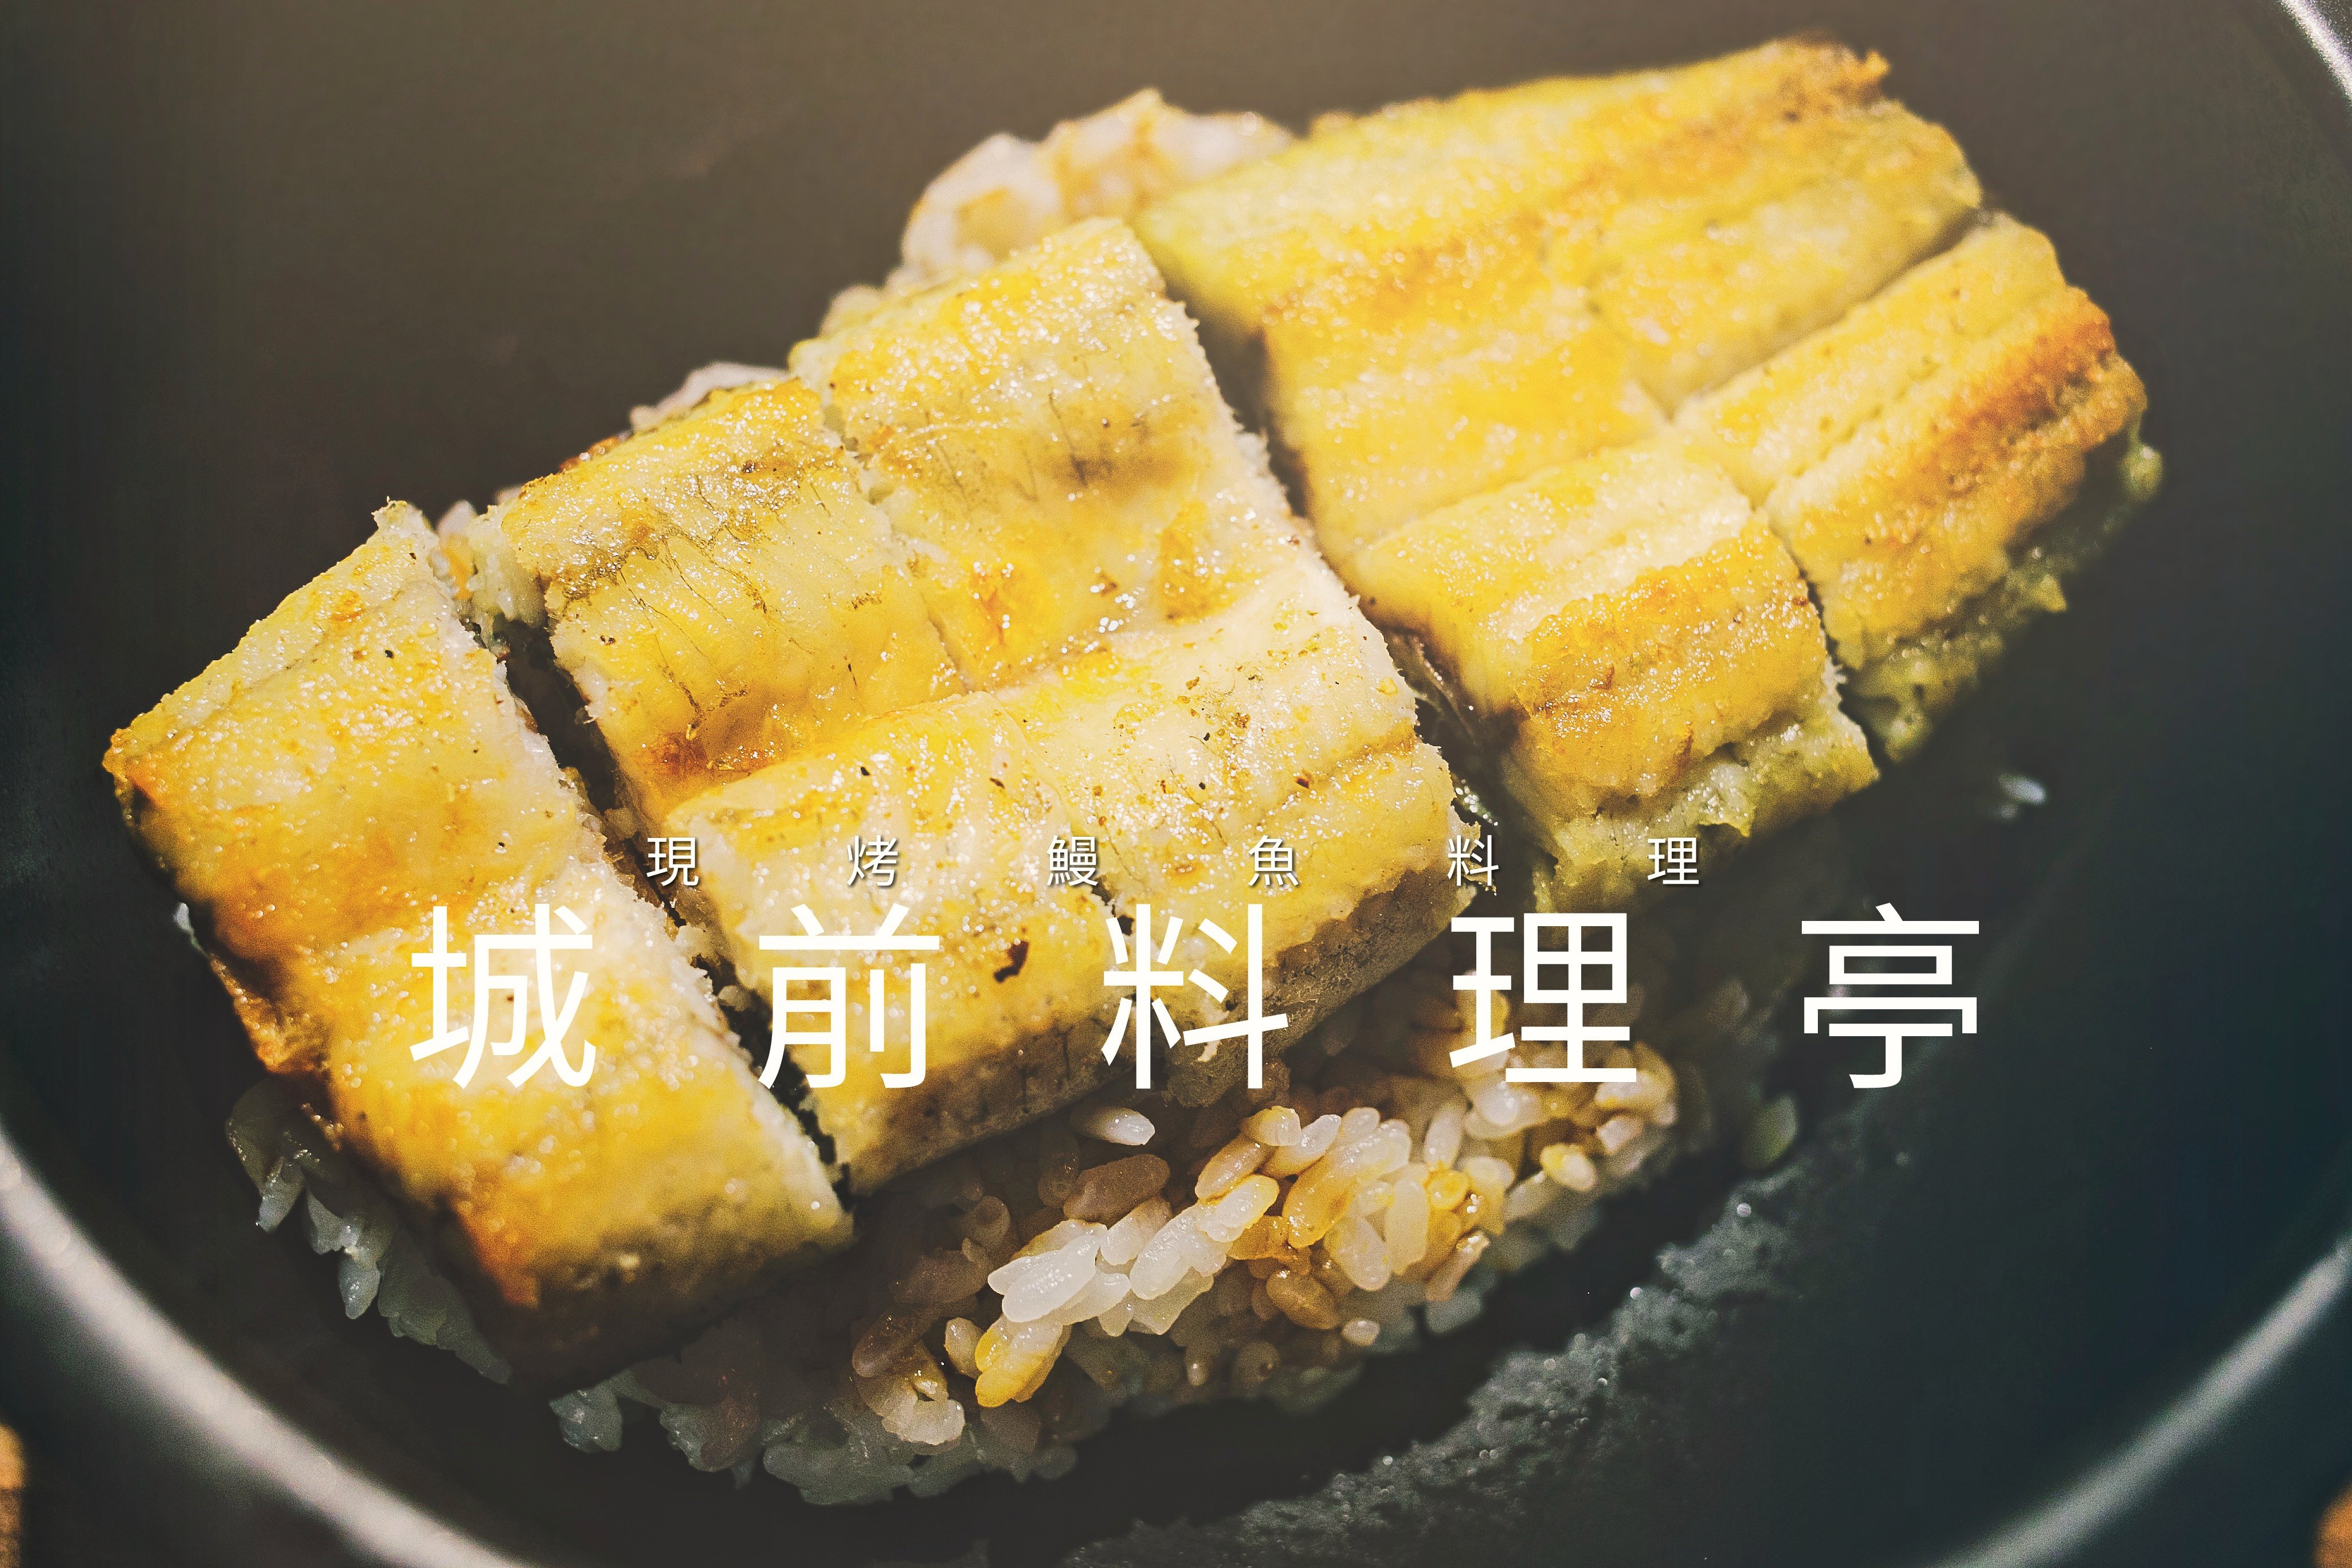 台南中西區日本料理．城前料理亭、旬膳、魚生、握壽司、碳烤．一碗入魂的現烤鰻魚丼、美味握壽司，不可錯過的